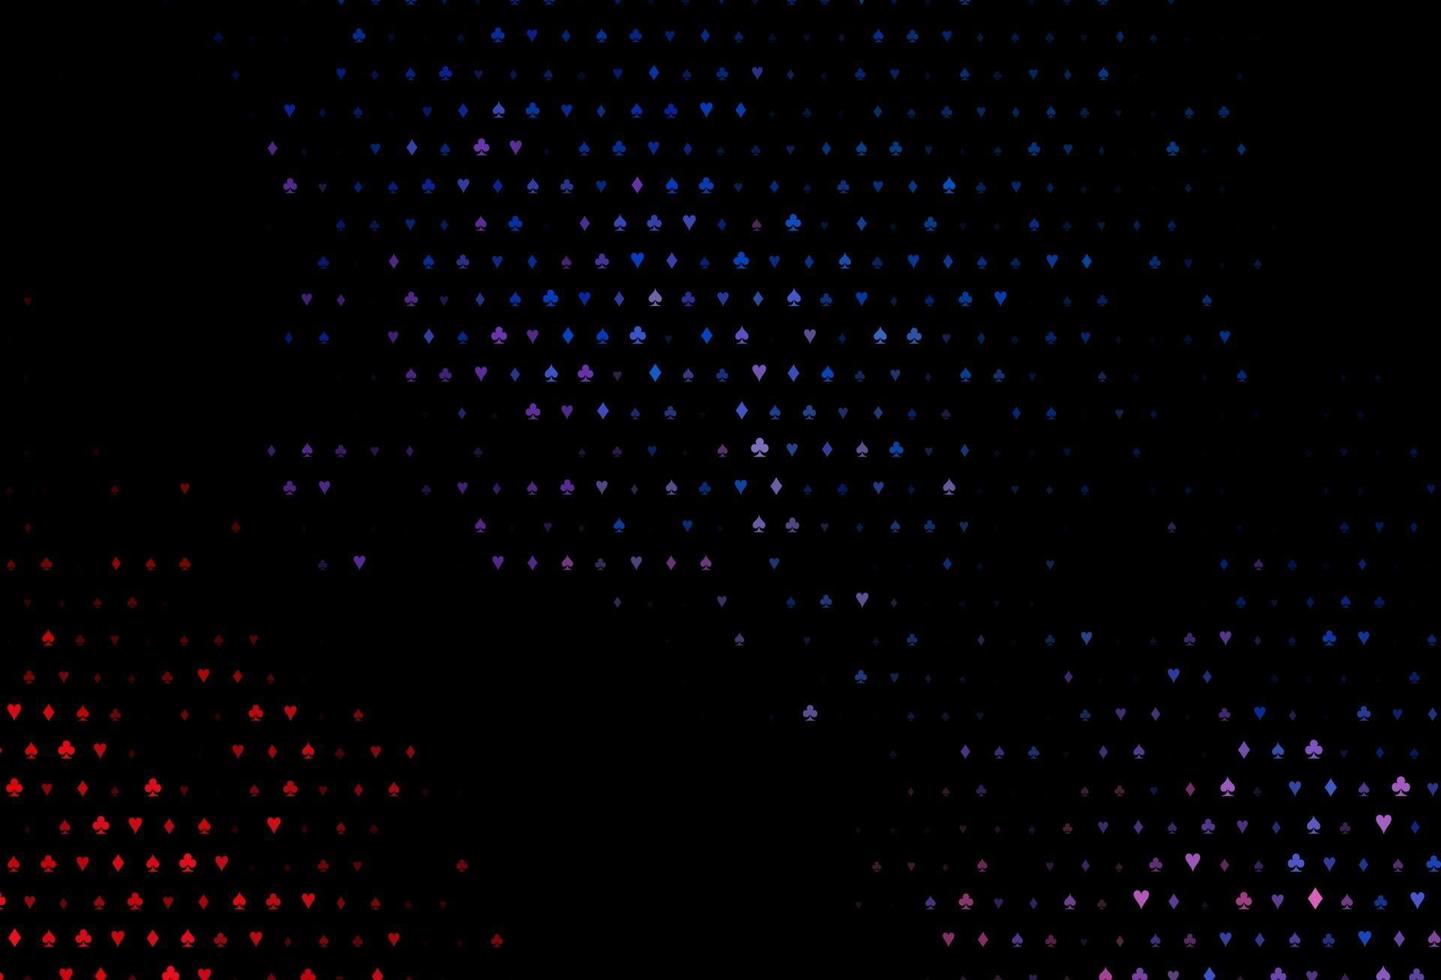 modelo de vetor azul e vermelho escuro com símbolos de pôquer.